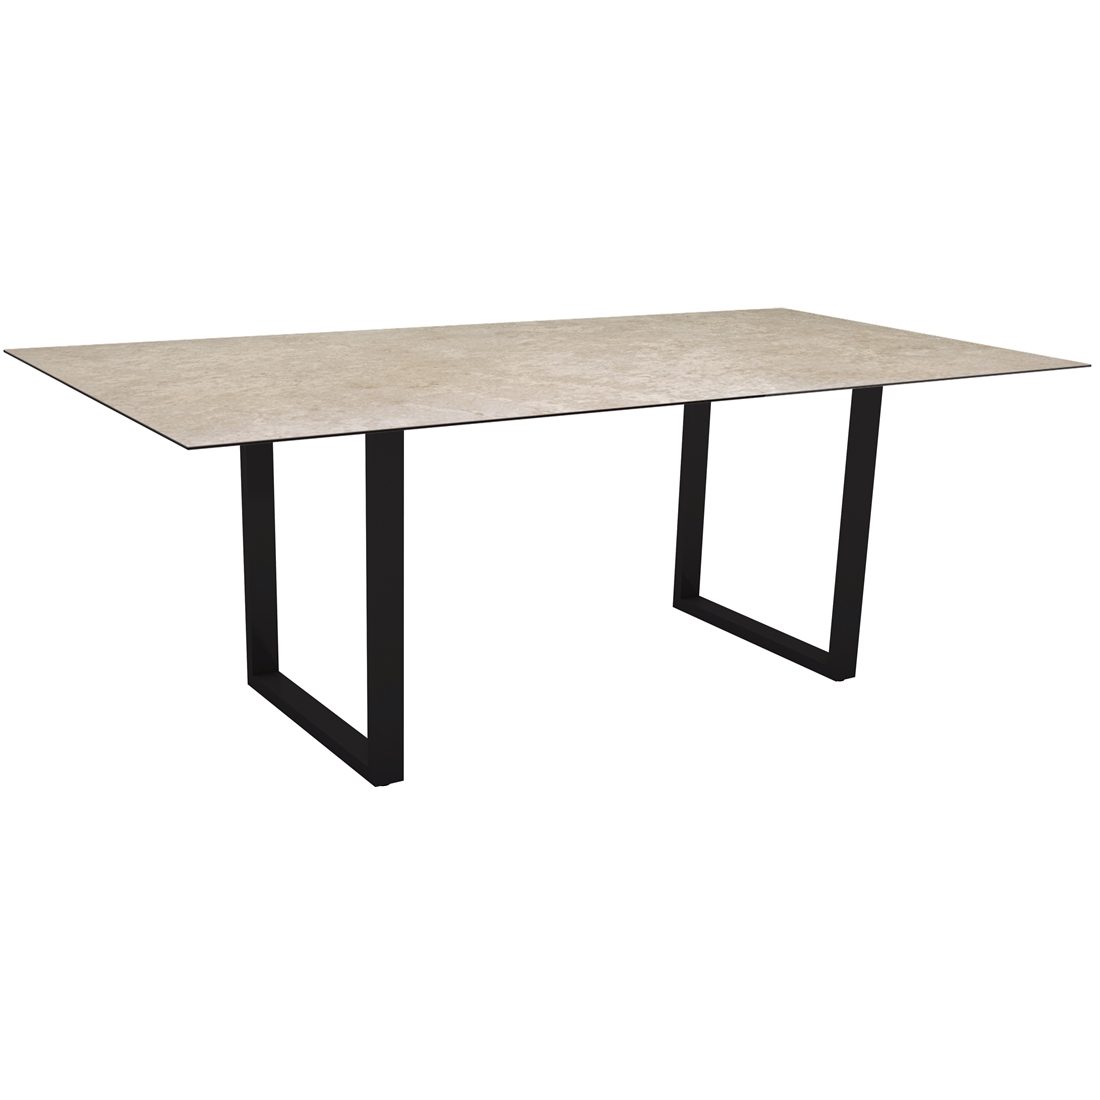 Stern Kufentisch, Gestell schwarz matt, Tischplatte HPL Vintage Shell, Tischgröße: 200x100 cm